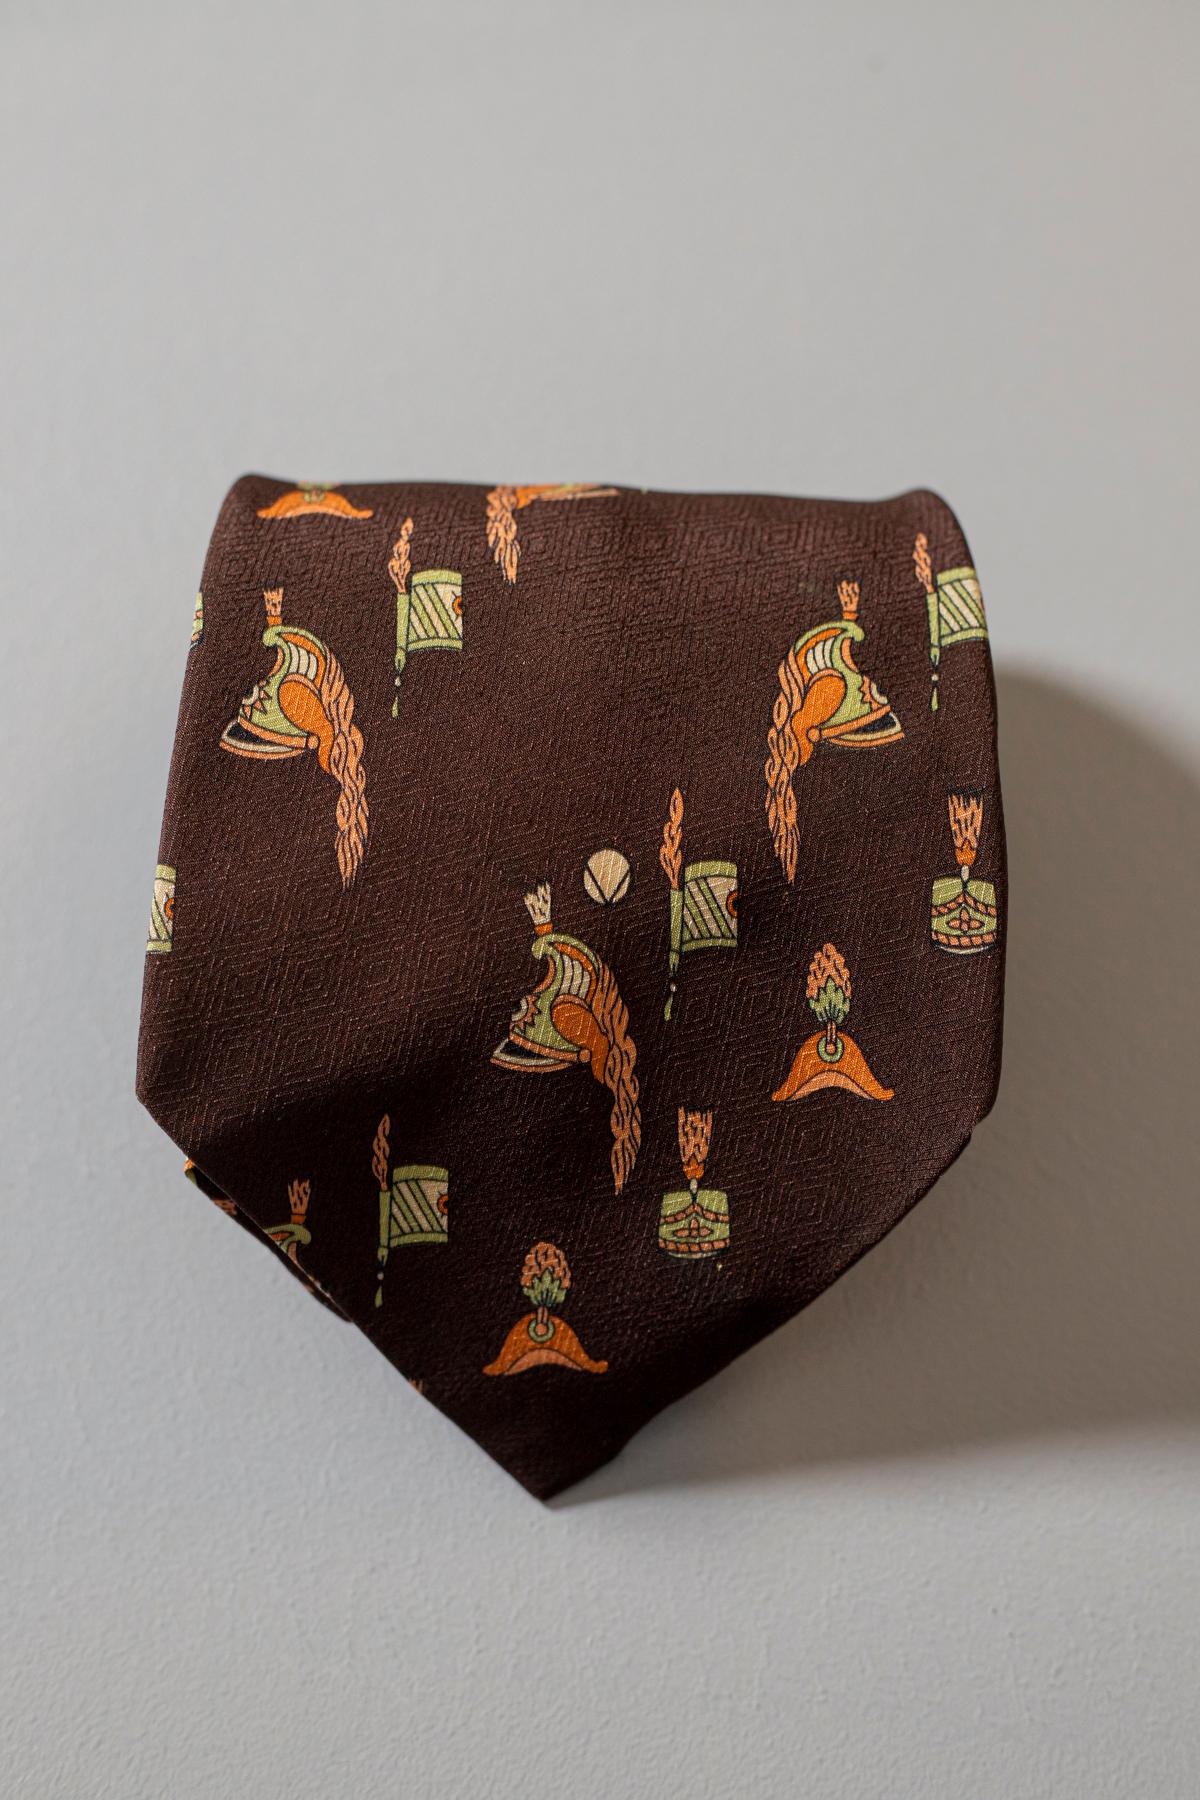 Cravate vintage Valentino, Elle est faite de 100% soie, ce qui explique qu'elle soit lisse et de bonne qualité. Ce modèle de cravate, avec les casques dessinés, rendra votre style unique et original. Idéal pour une soirée informelle entre amis ou